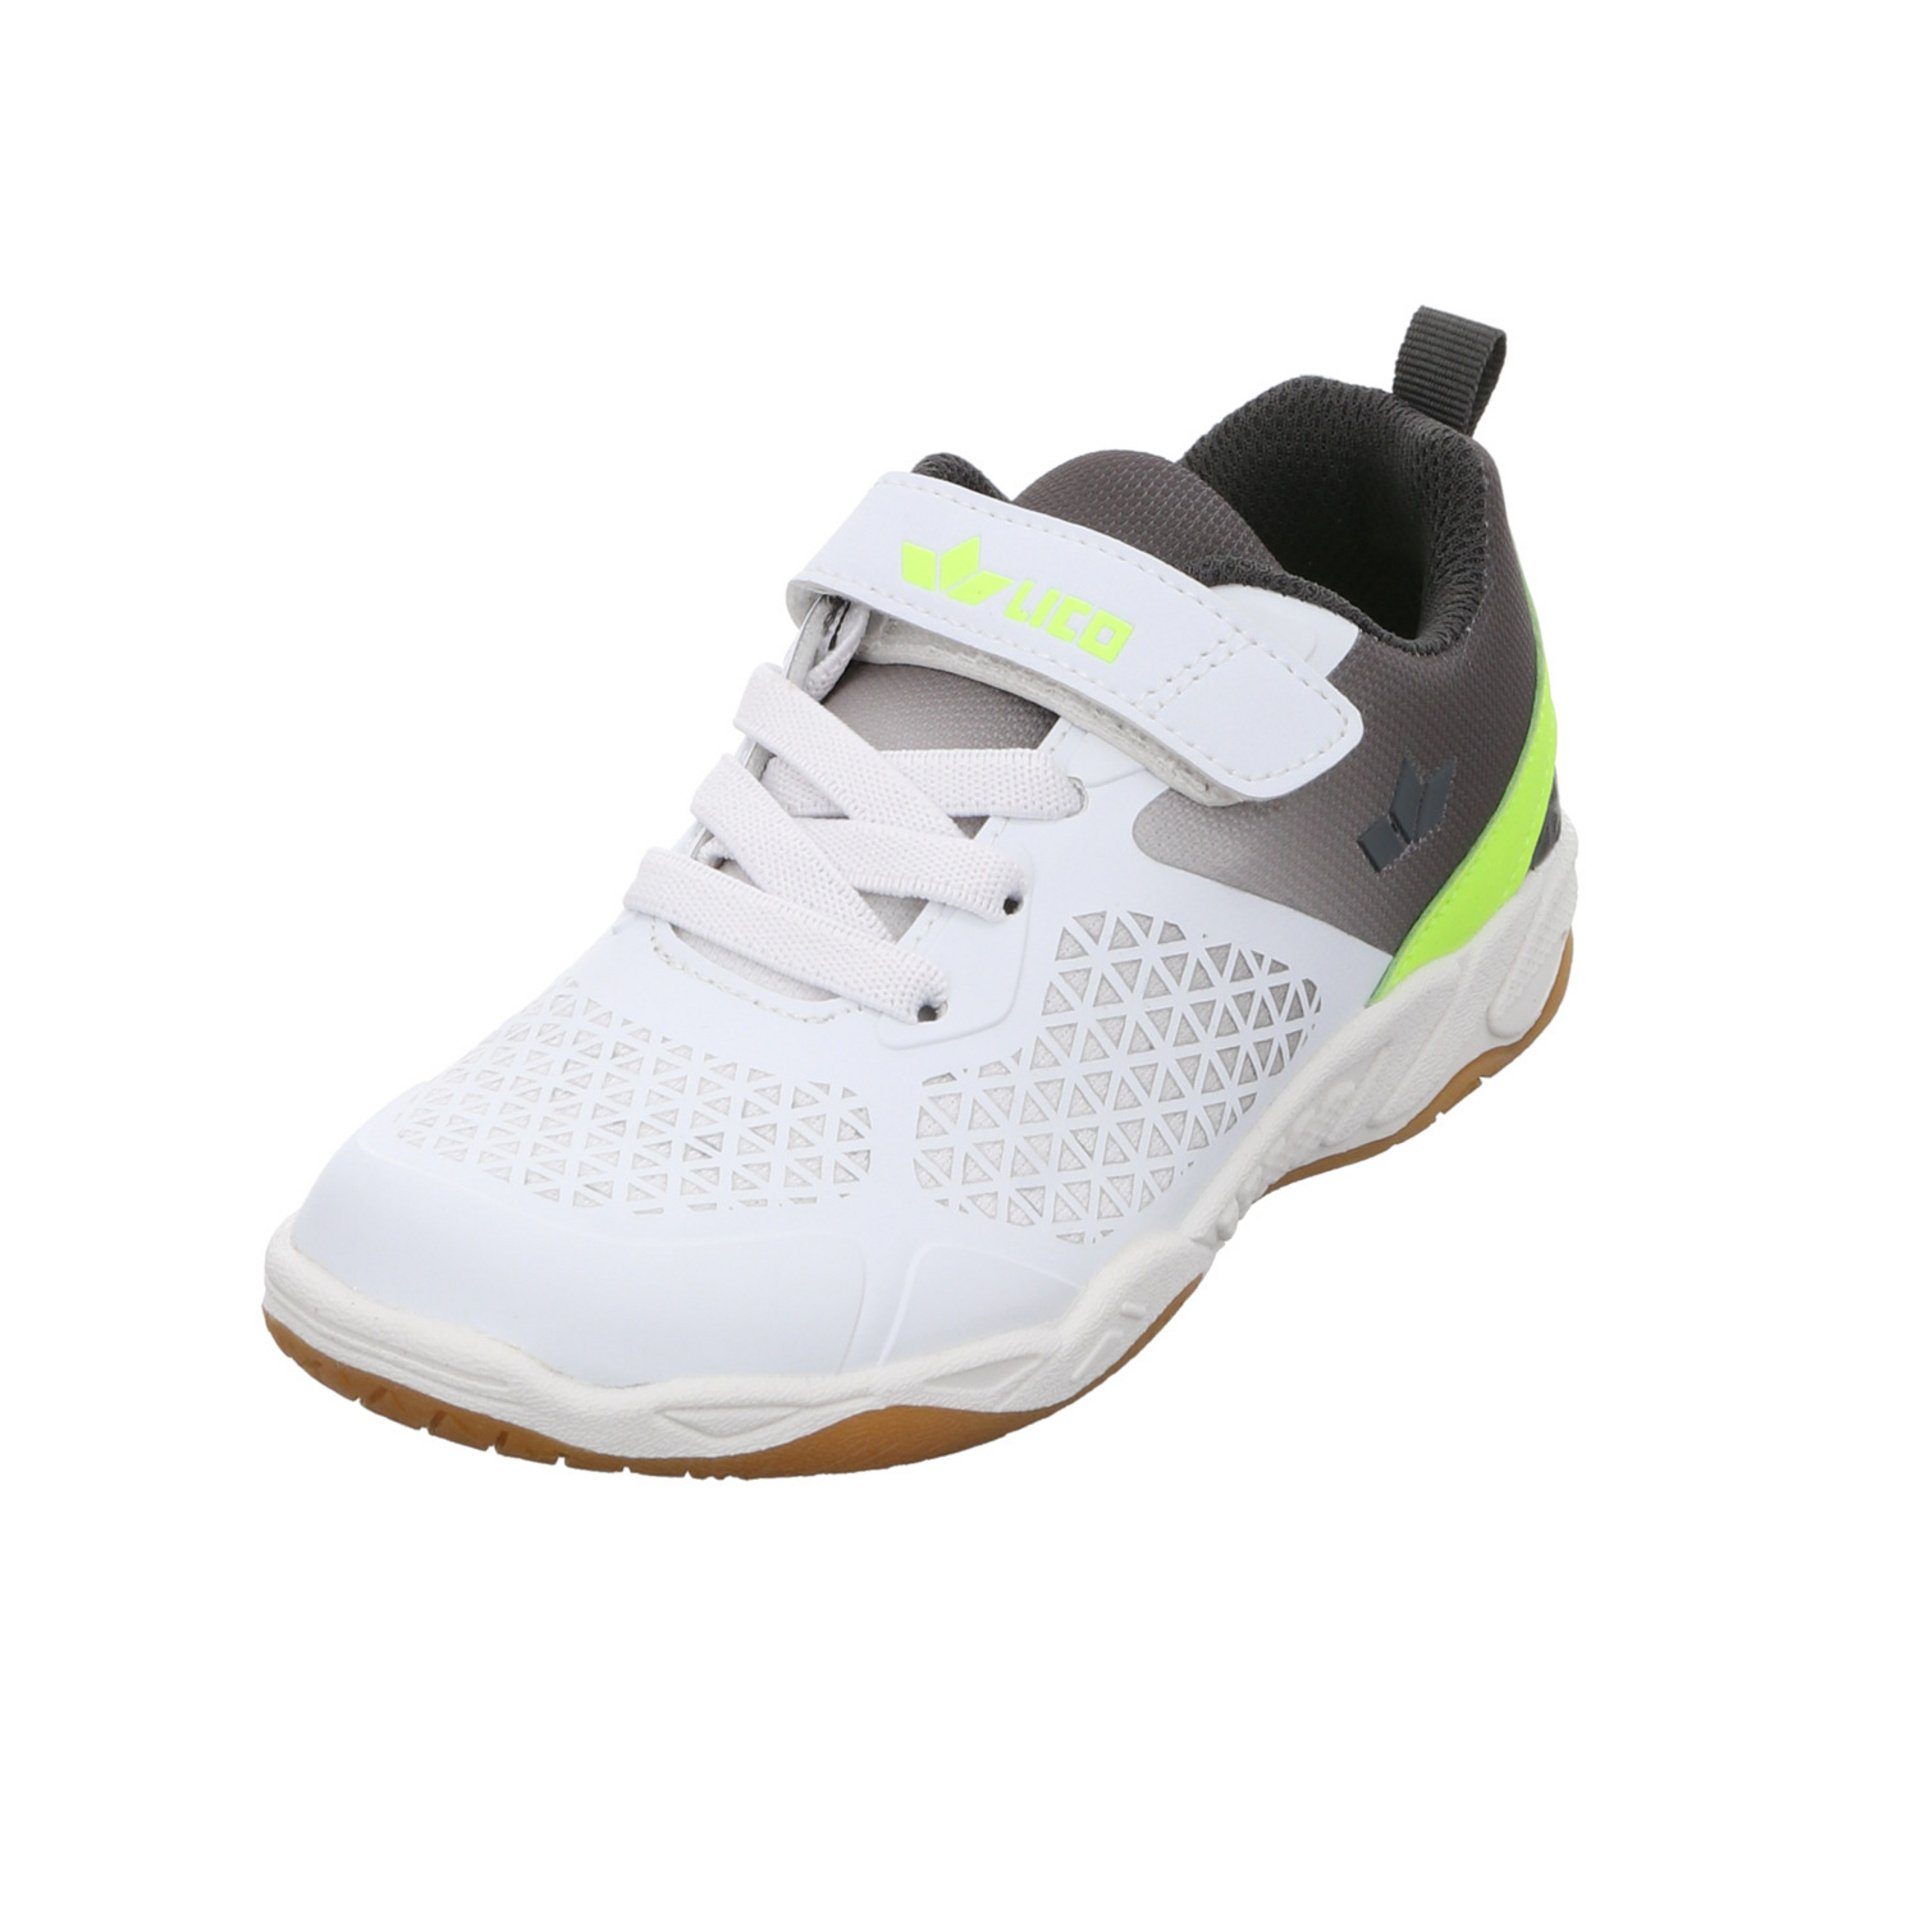 gemustert VS Kit Synthetikkombination Sneaker Lico weiss/grau/lemon Synthetikkombination Sneaker